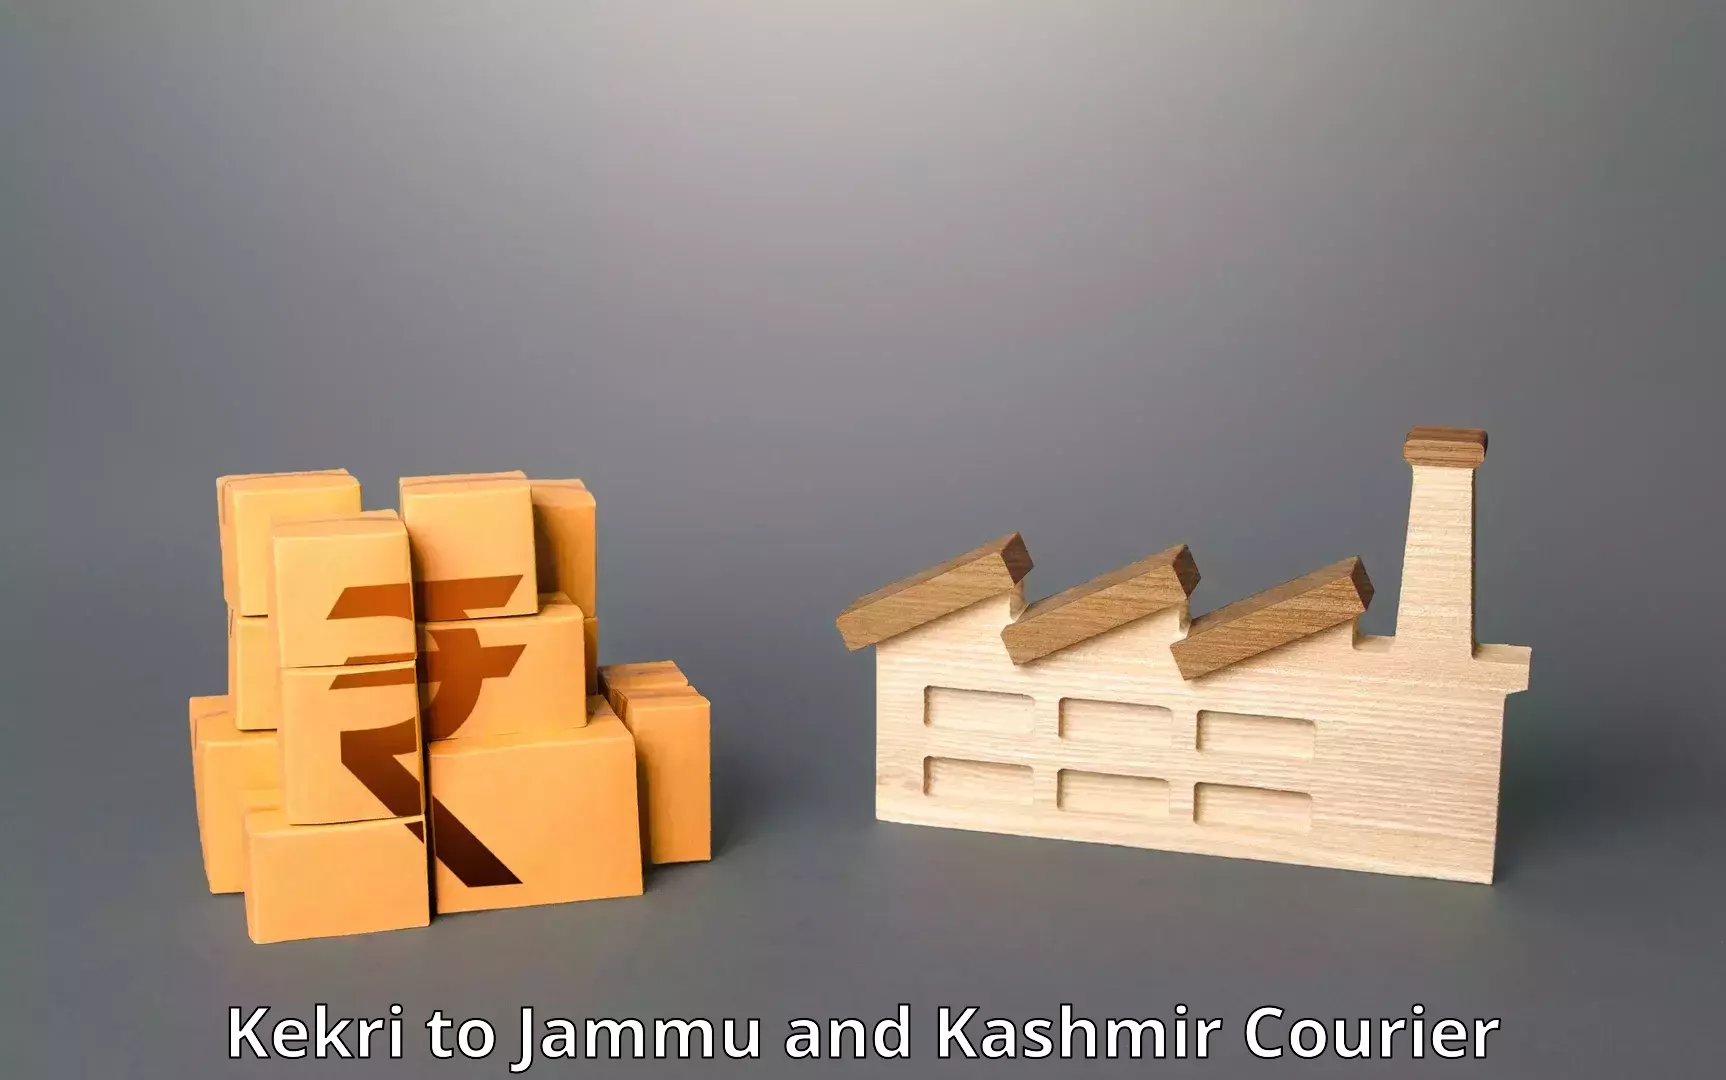 End-to-end delivery in Kekri to Srinagar Kashmir